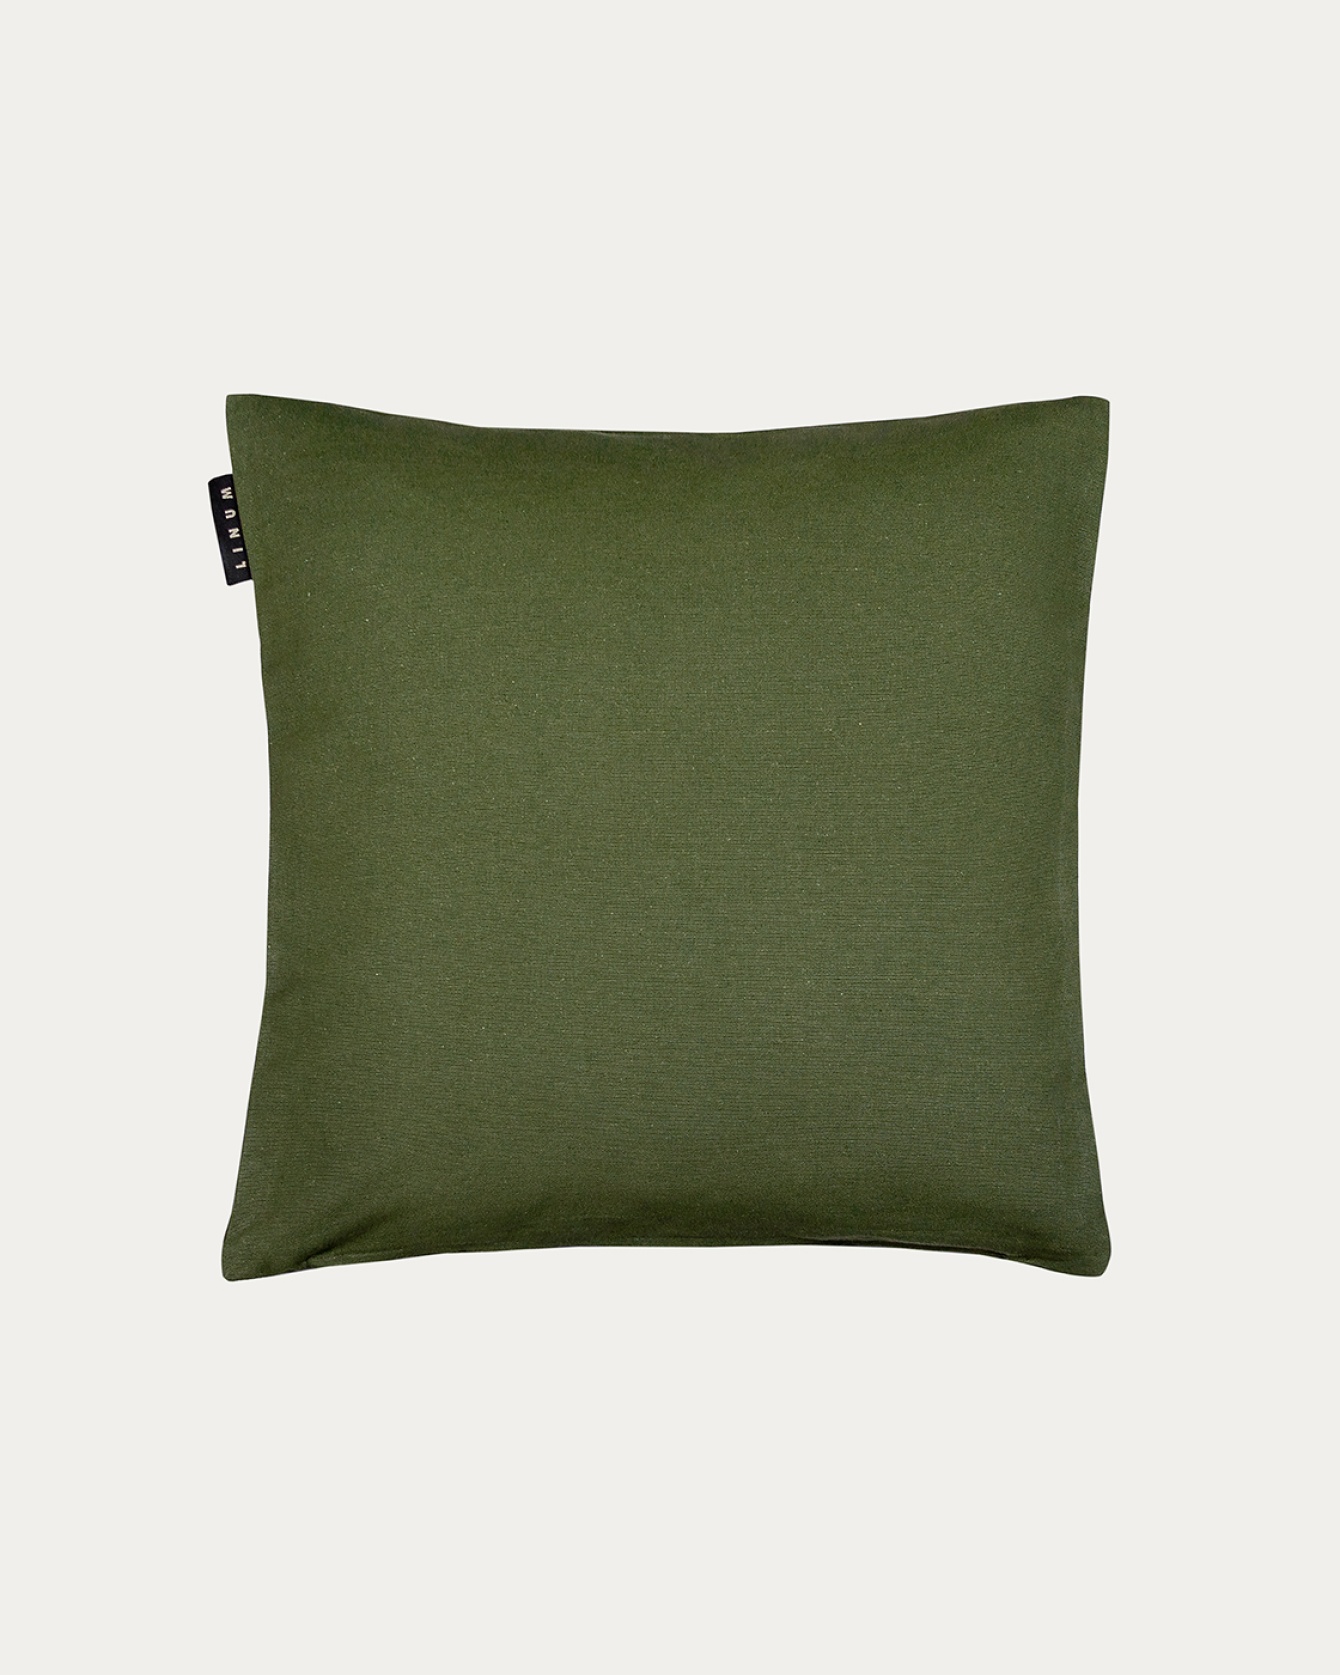 Produktbild mörk olivgrön ANNABELL kuddfodral av mjuk bomull från LINUM DESIGN. Storlek 40x40 cm.